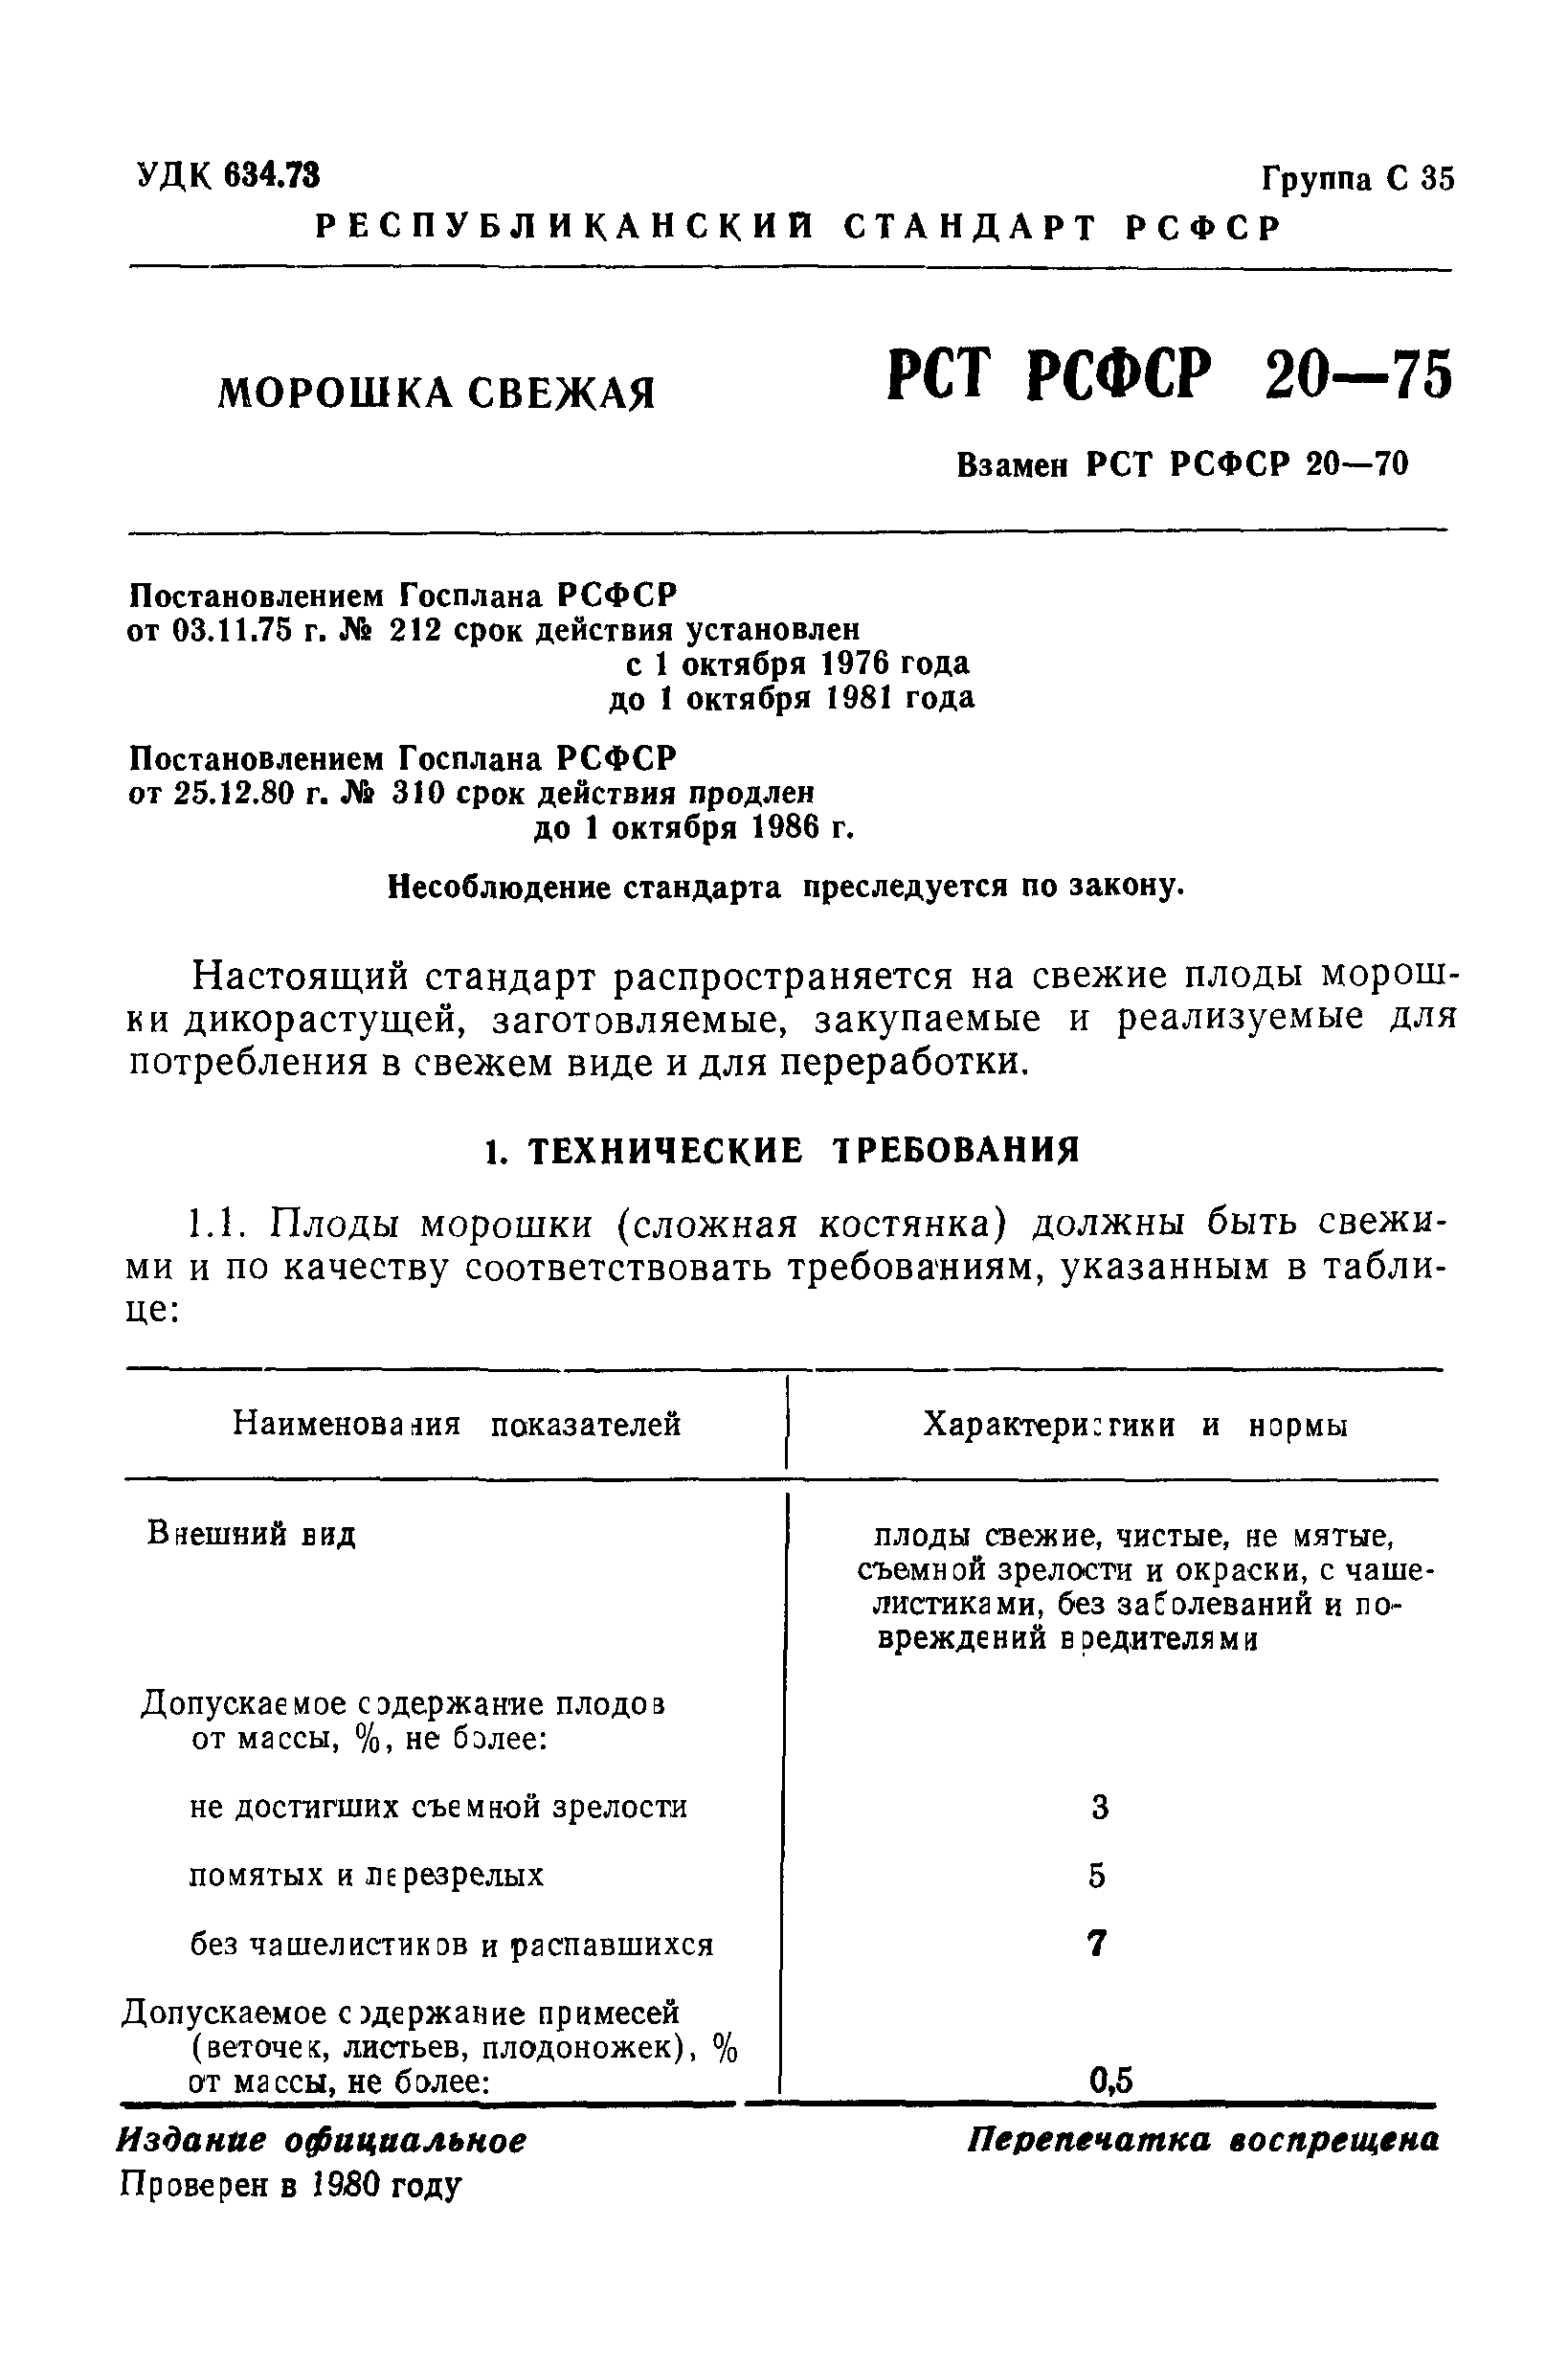 РСТ РСФСР 20-75